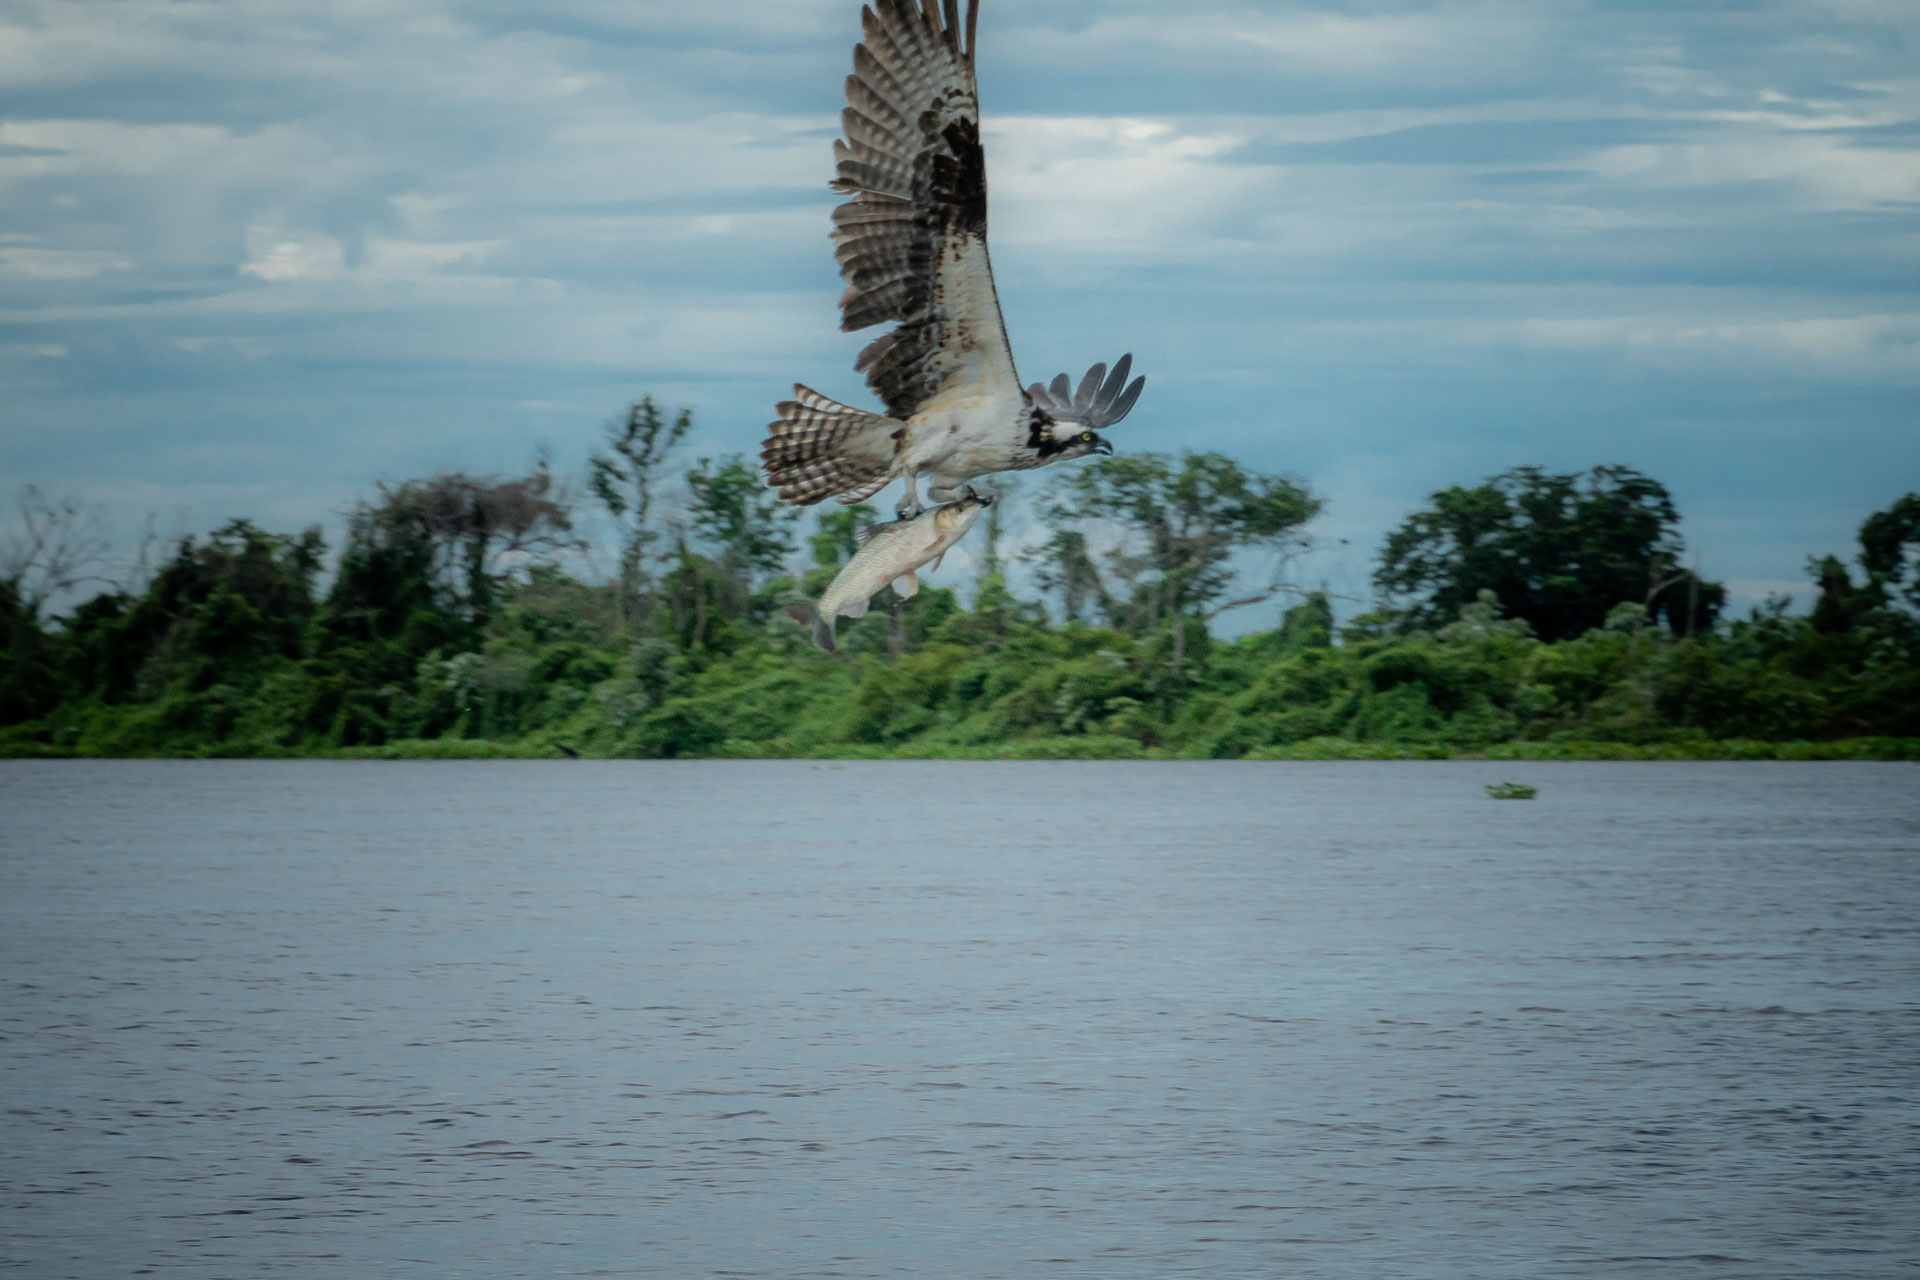 Águia caçadora voando sobre o lago com um peixe nas garras